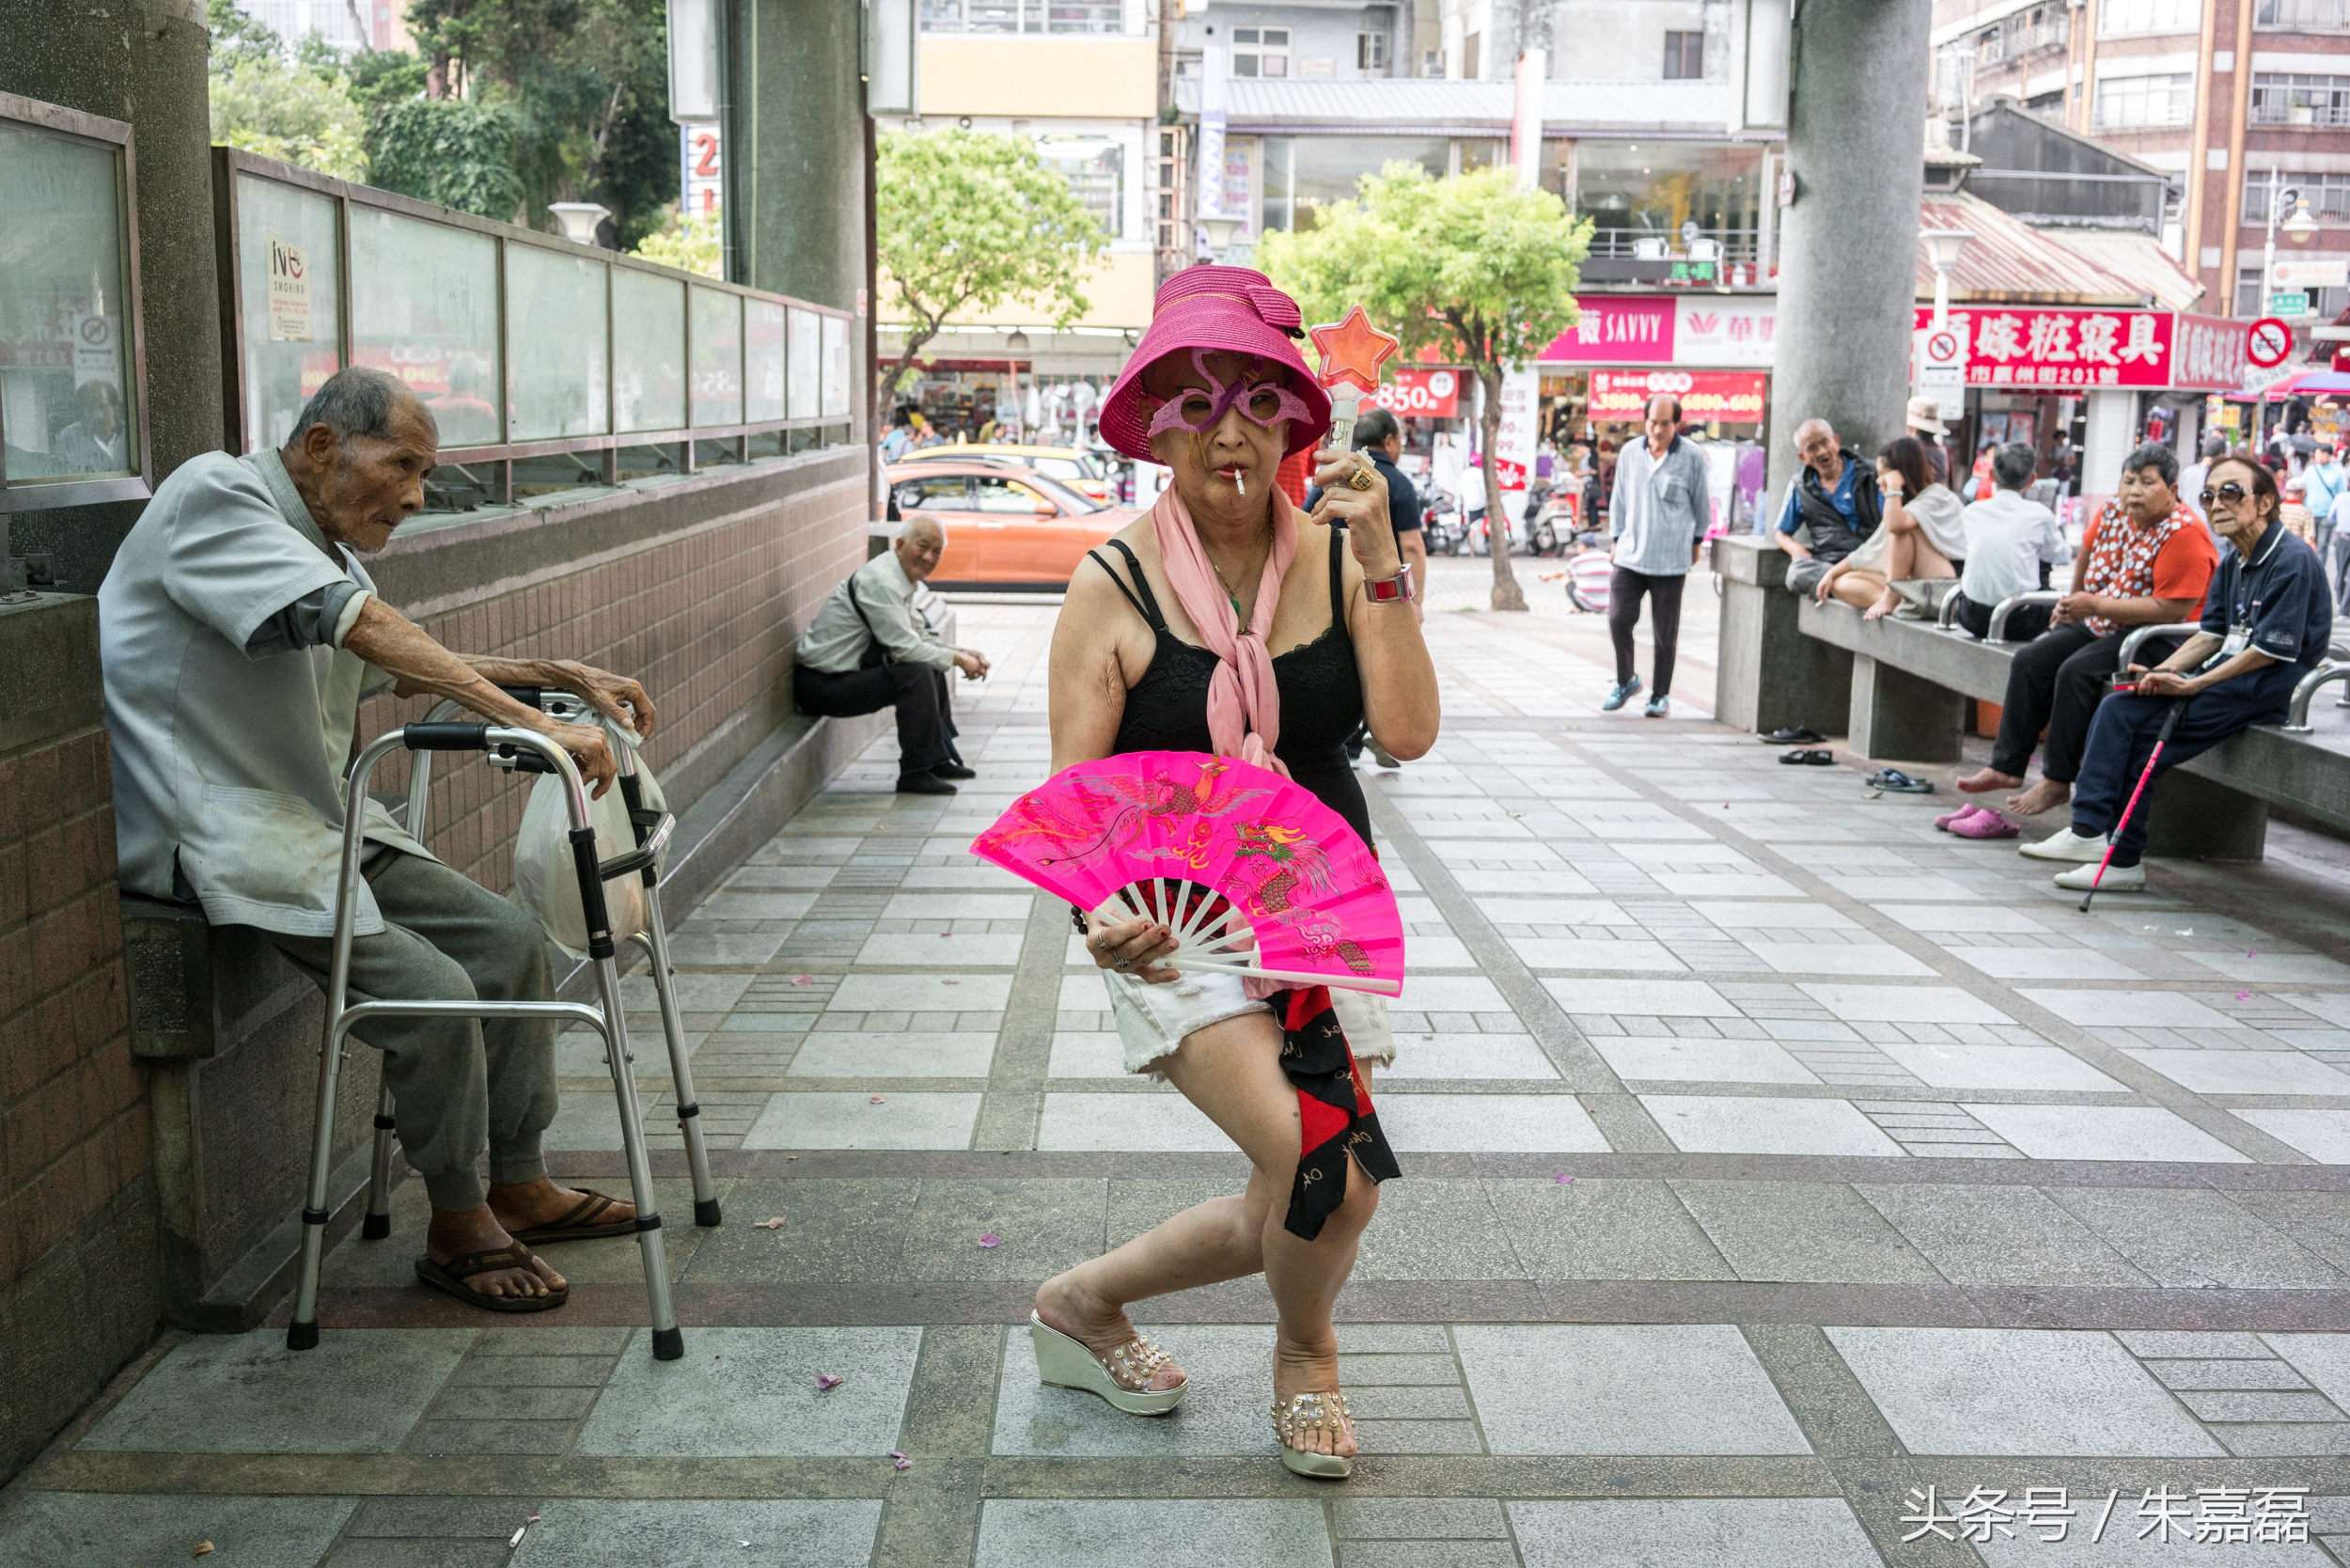 台北艋︰這里仍保留80年代模樣 60歲女性打扮妖艷干這份工作10 / 作者:123456790 / 帖子ID:162